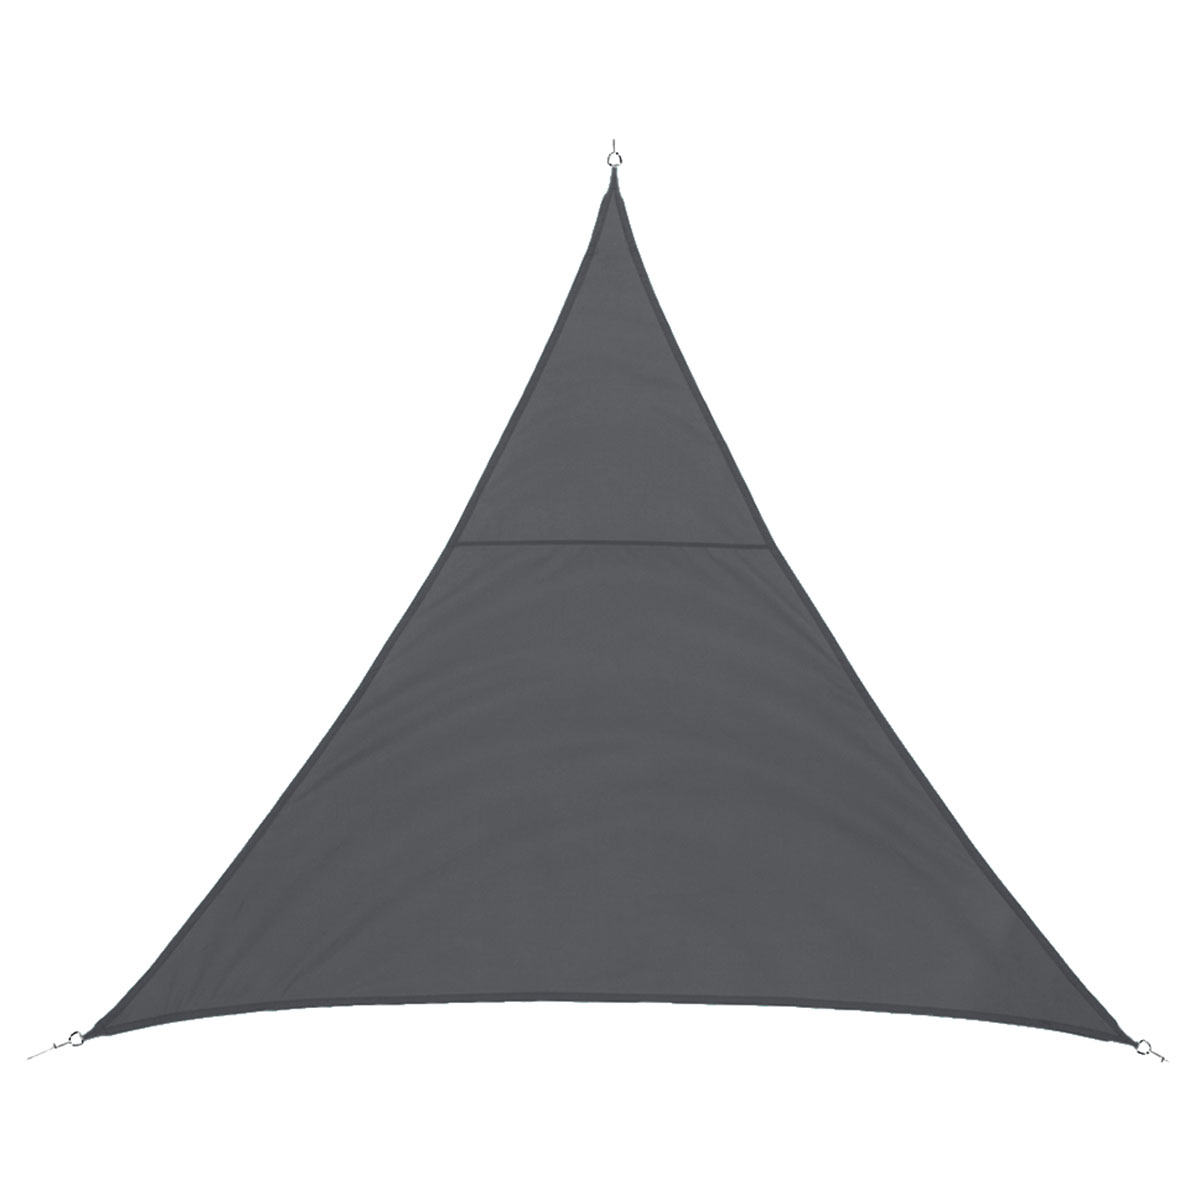 Τριγωνικό Σκίαστρο Αδιάβροχο & Αντιηλιακό (4x4x4) H-S Grey 171344A 202381